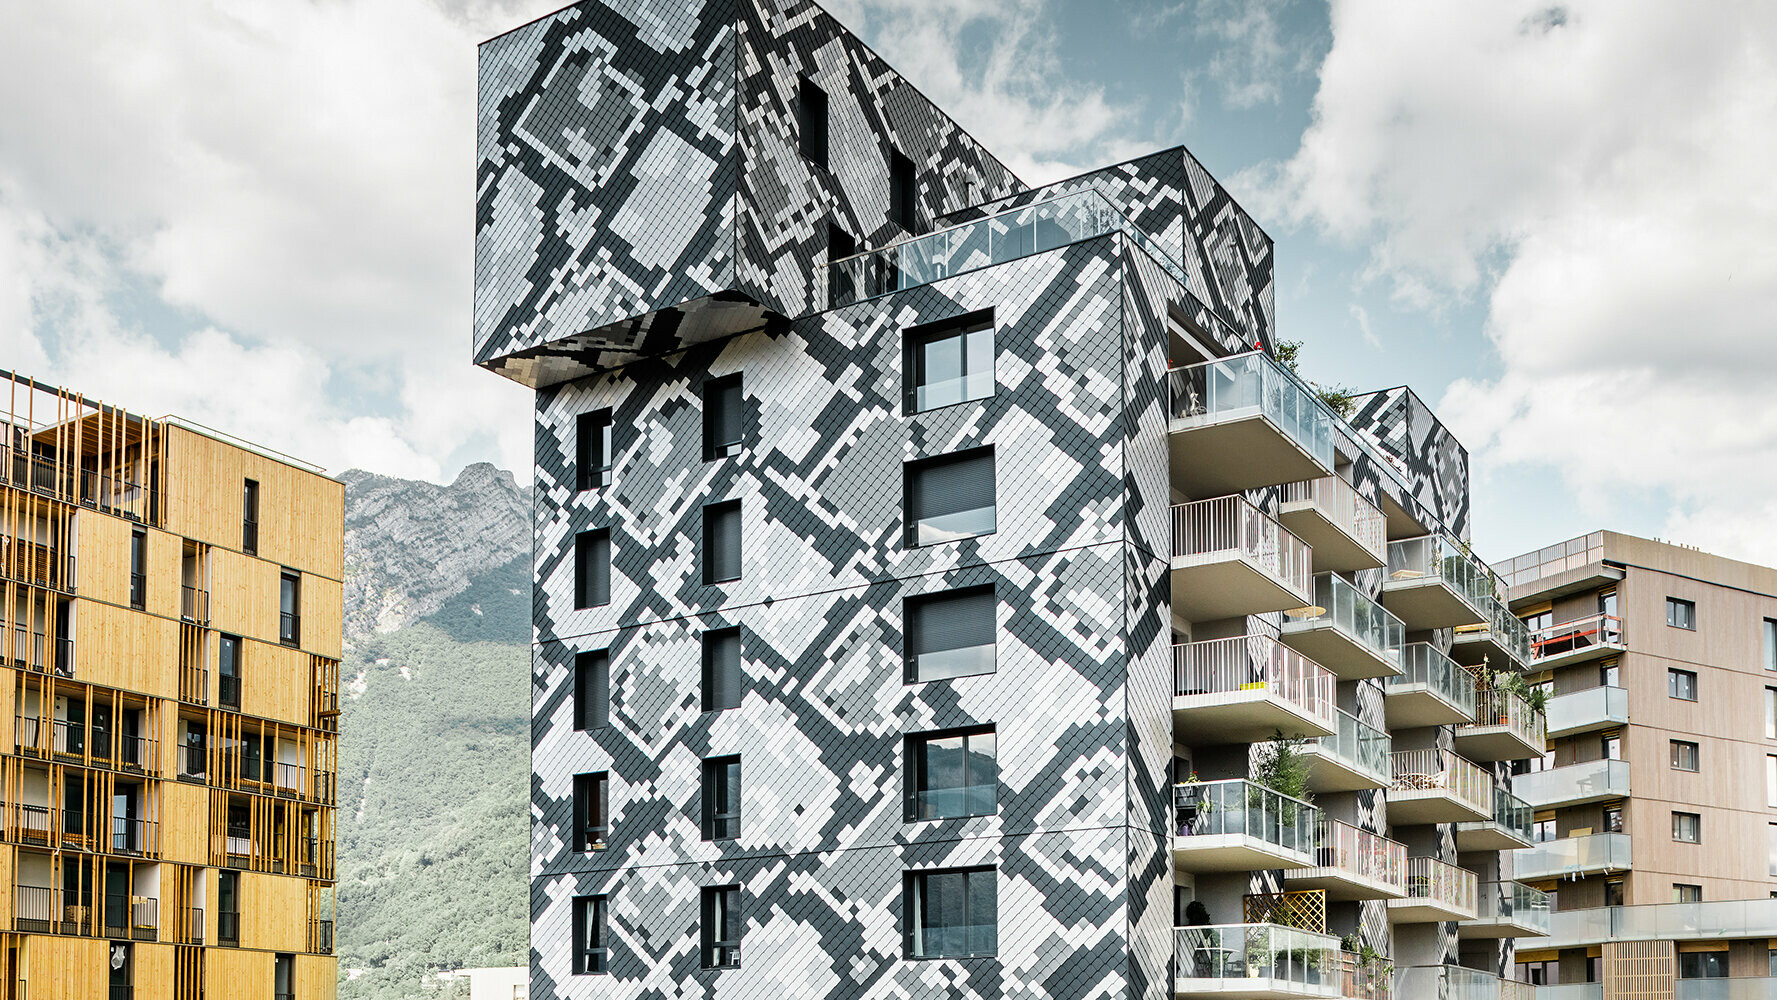 La façade de cet immeuble collectif à Grenoble rappelle un serpent aux écailles de couleurs différentes.